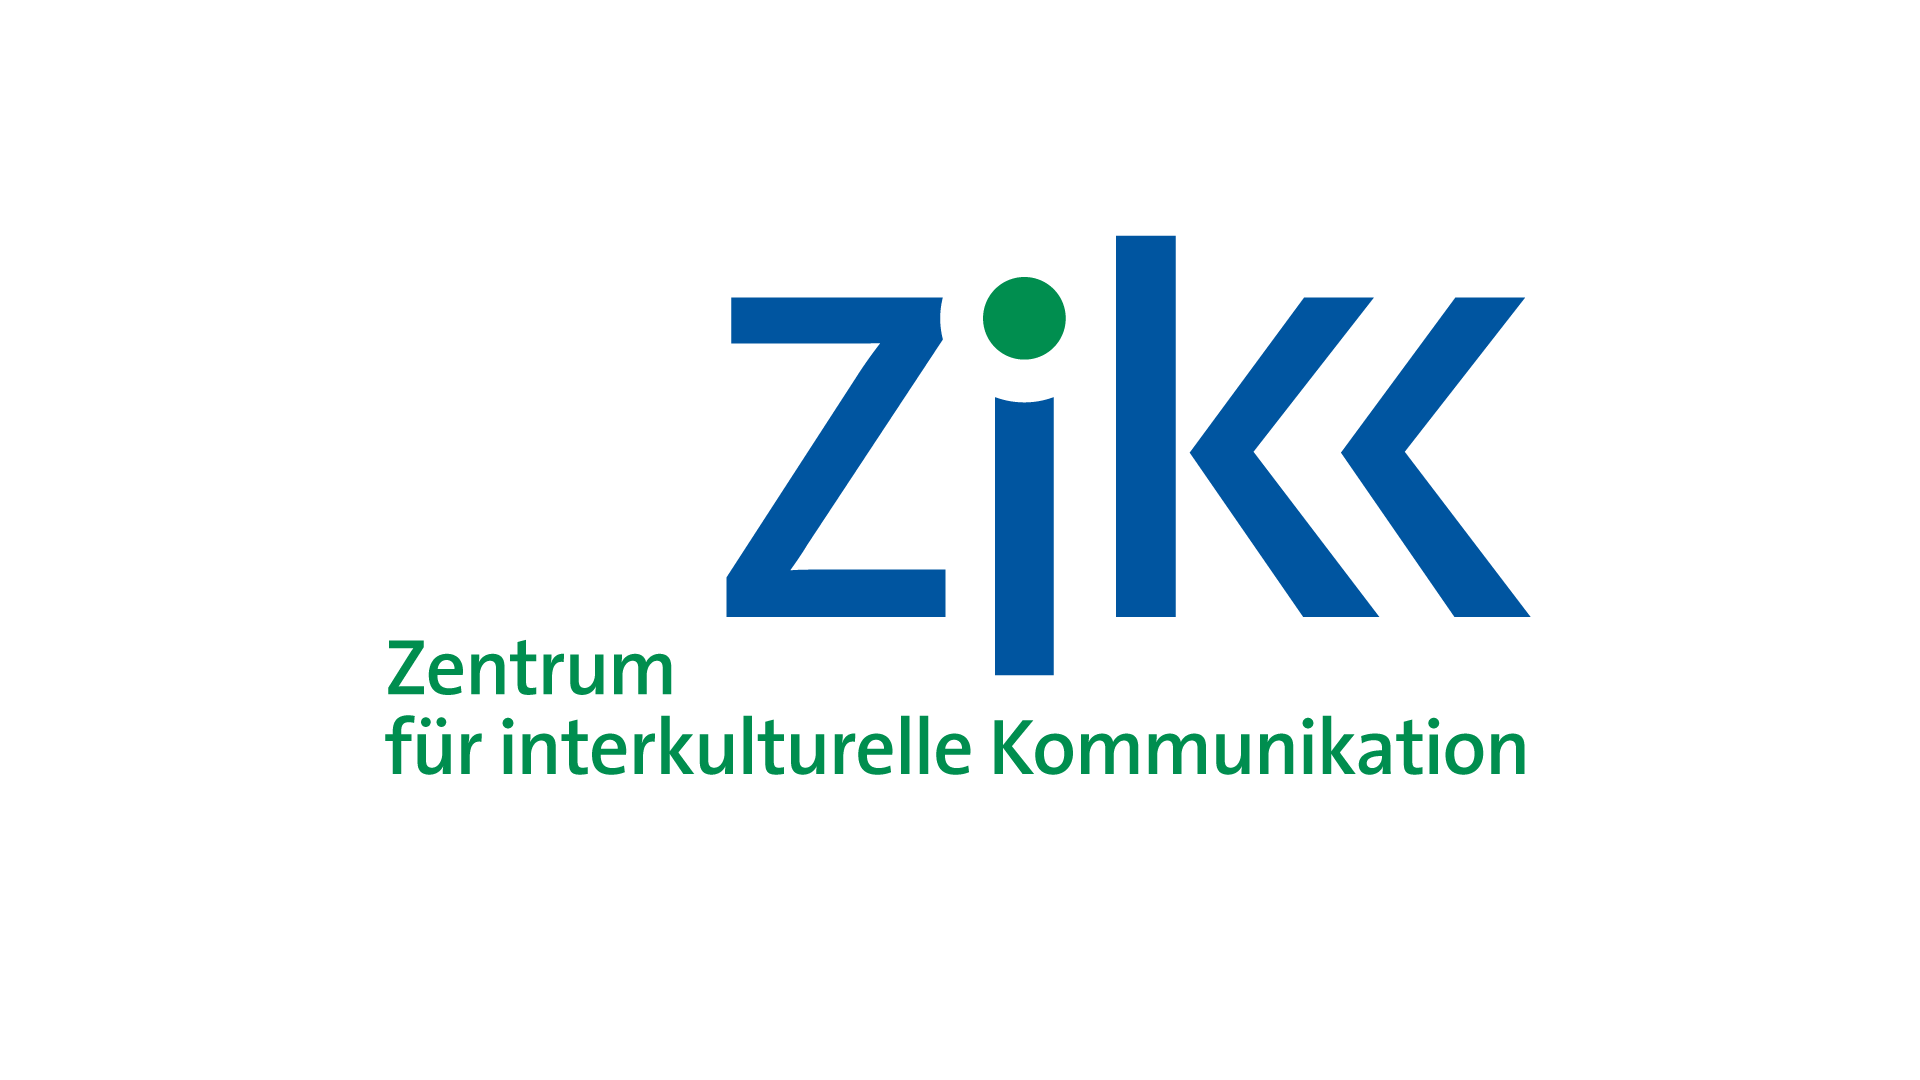 ZikK – Zentrum für interkulturelle Kommunikation an der Hochschule für Jüdische Studien, Heidelberg: Logo, Geschäftspapiere, Web